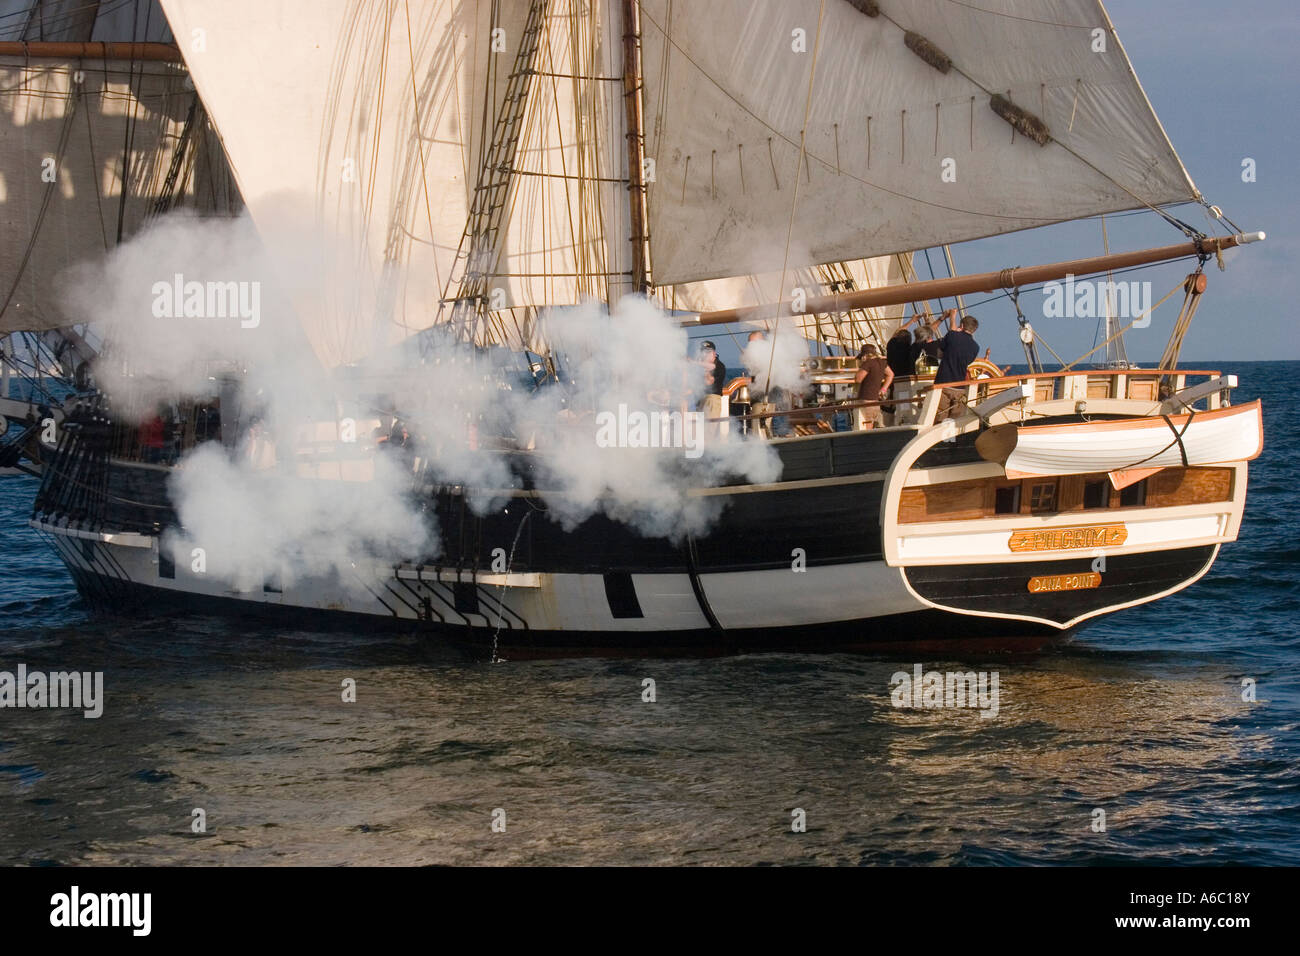 Rauchen Sie Wogen aus der Backbordseite des Brig "Pilgrim" in einem mock Feuergefecht während ein Festival der Segelschiffe in Dana Point, Kalifornien. Stockfoto